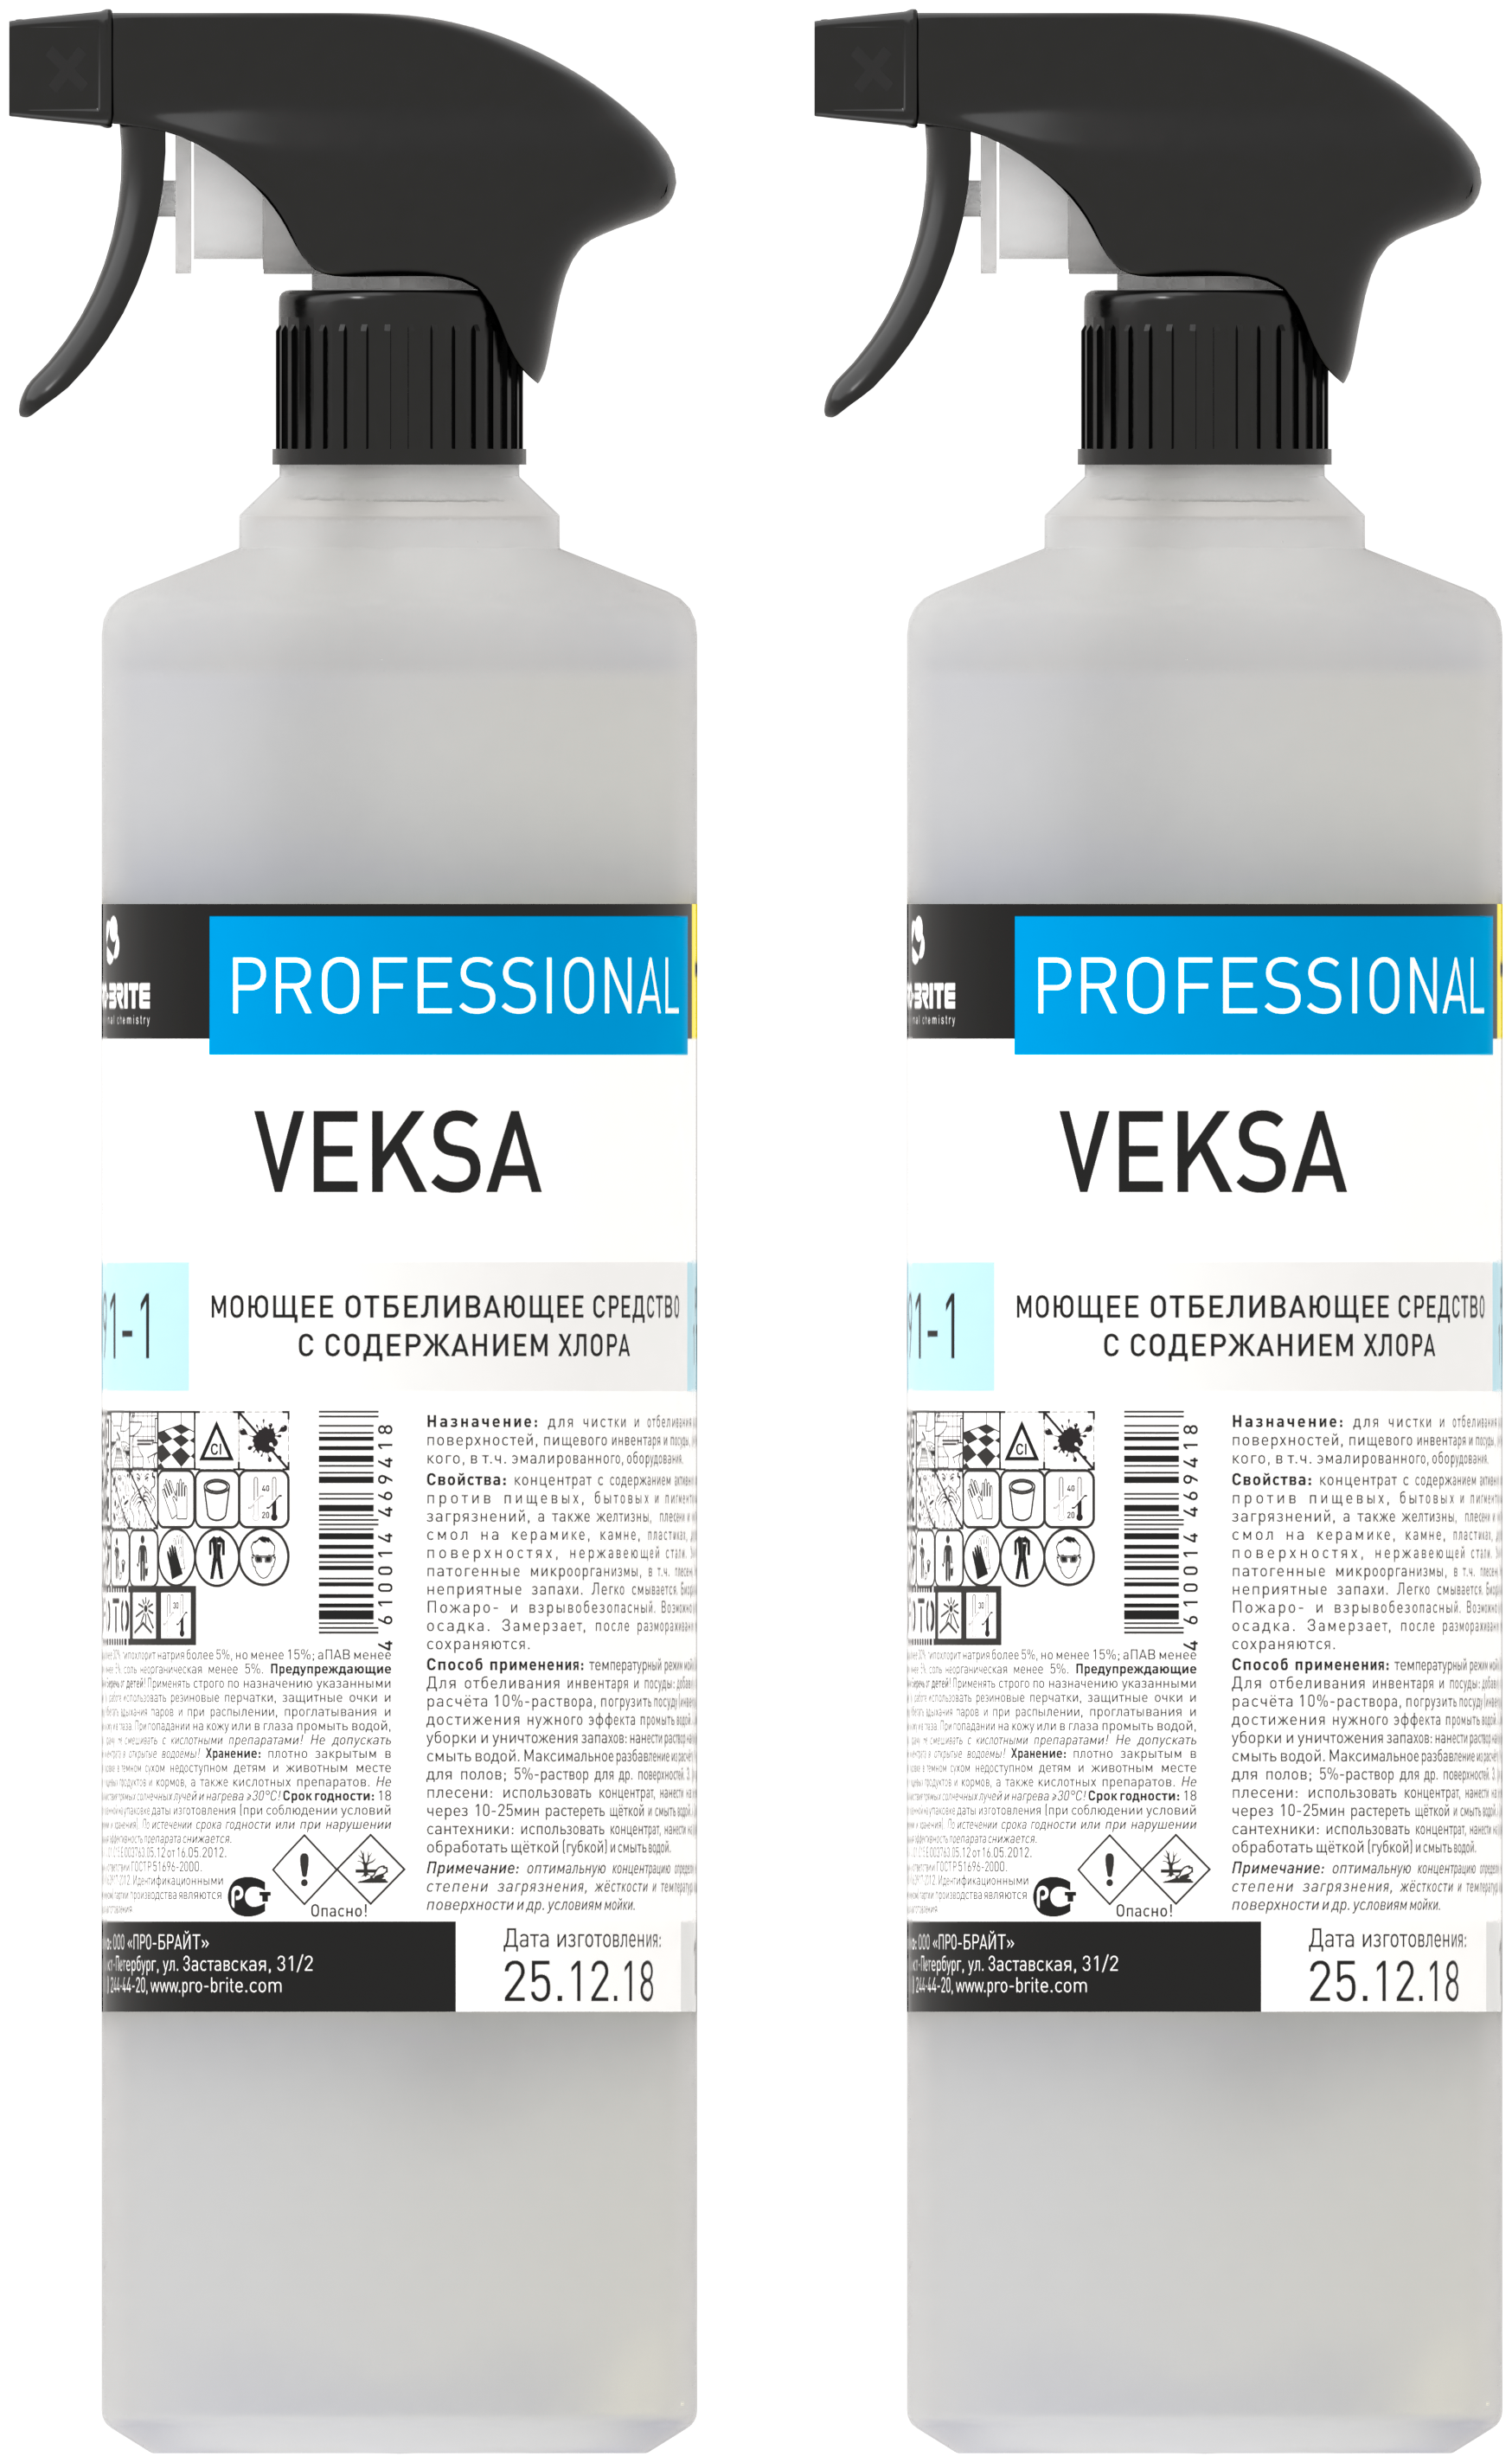 Моющее отбеливающее средство с содержанием хлора VEKSA, 1 л, 2 шт.